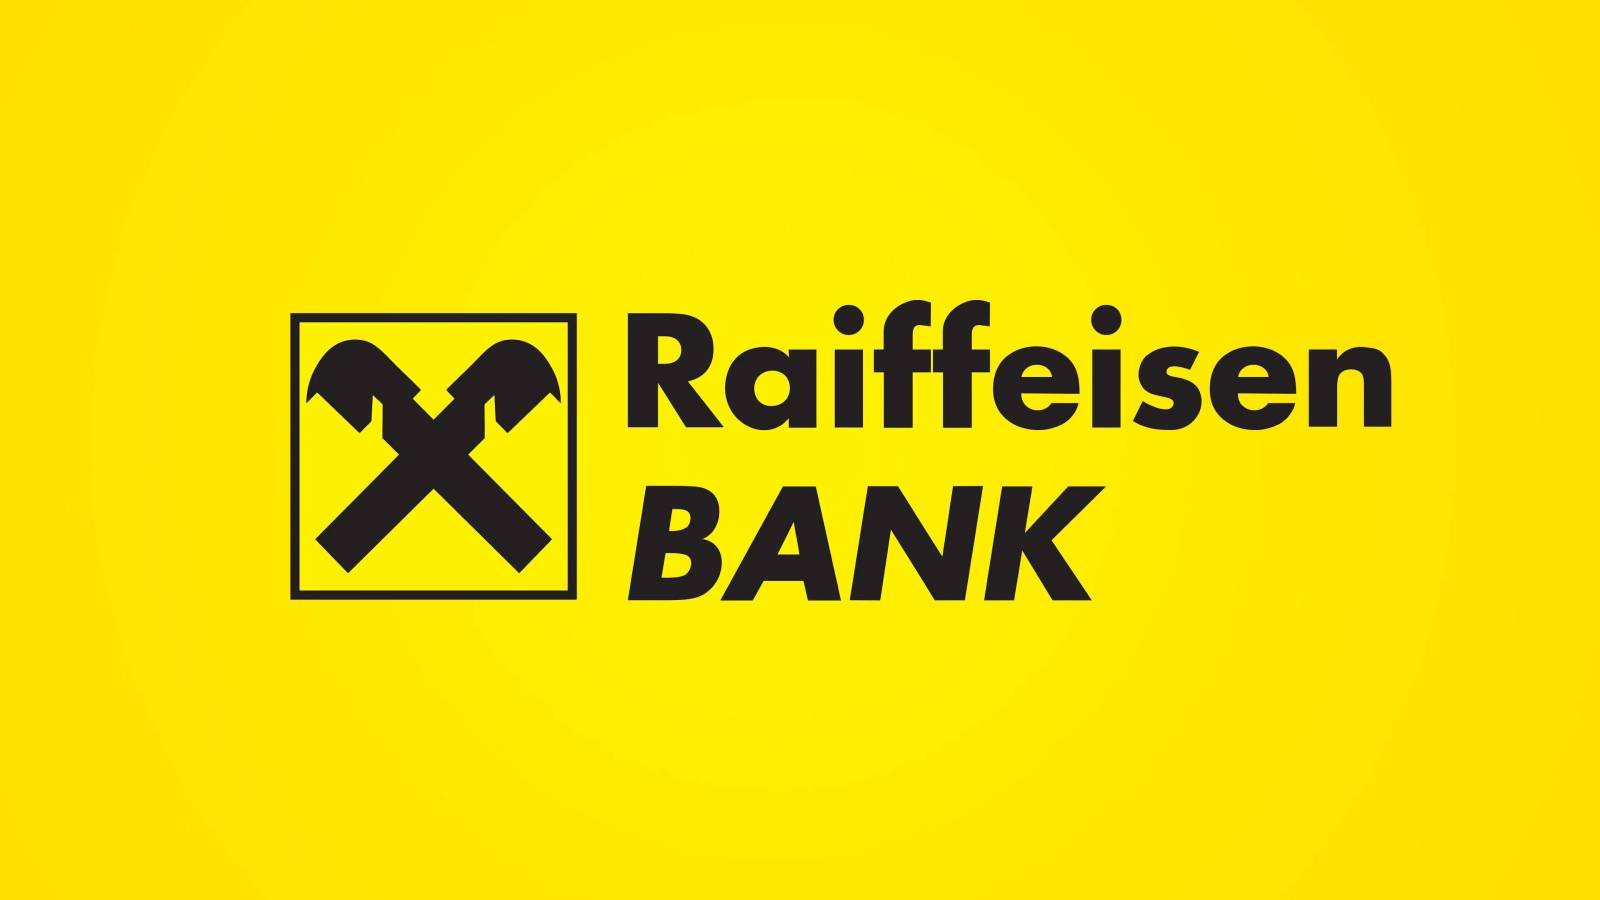 Decisioni ufficiali della Banca Raiffeisen ULTIMO MOMENTO Informazioni ufficiali rumene